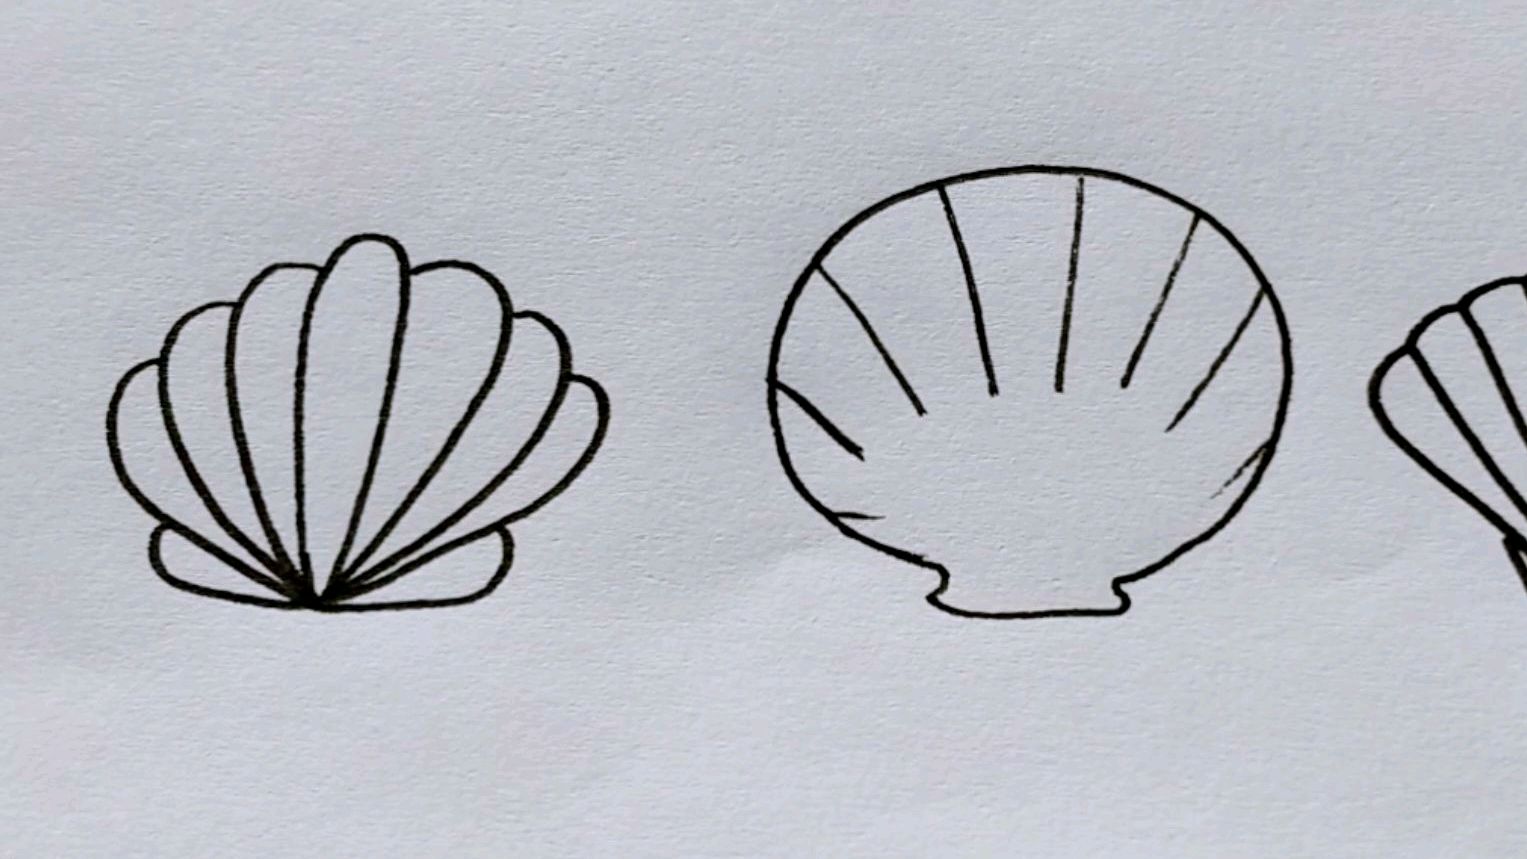 1漂亮贝壳的画法  01:26  来源:秒懂百科-简笔画贝壳 简单好学 服务